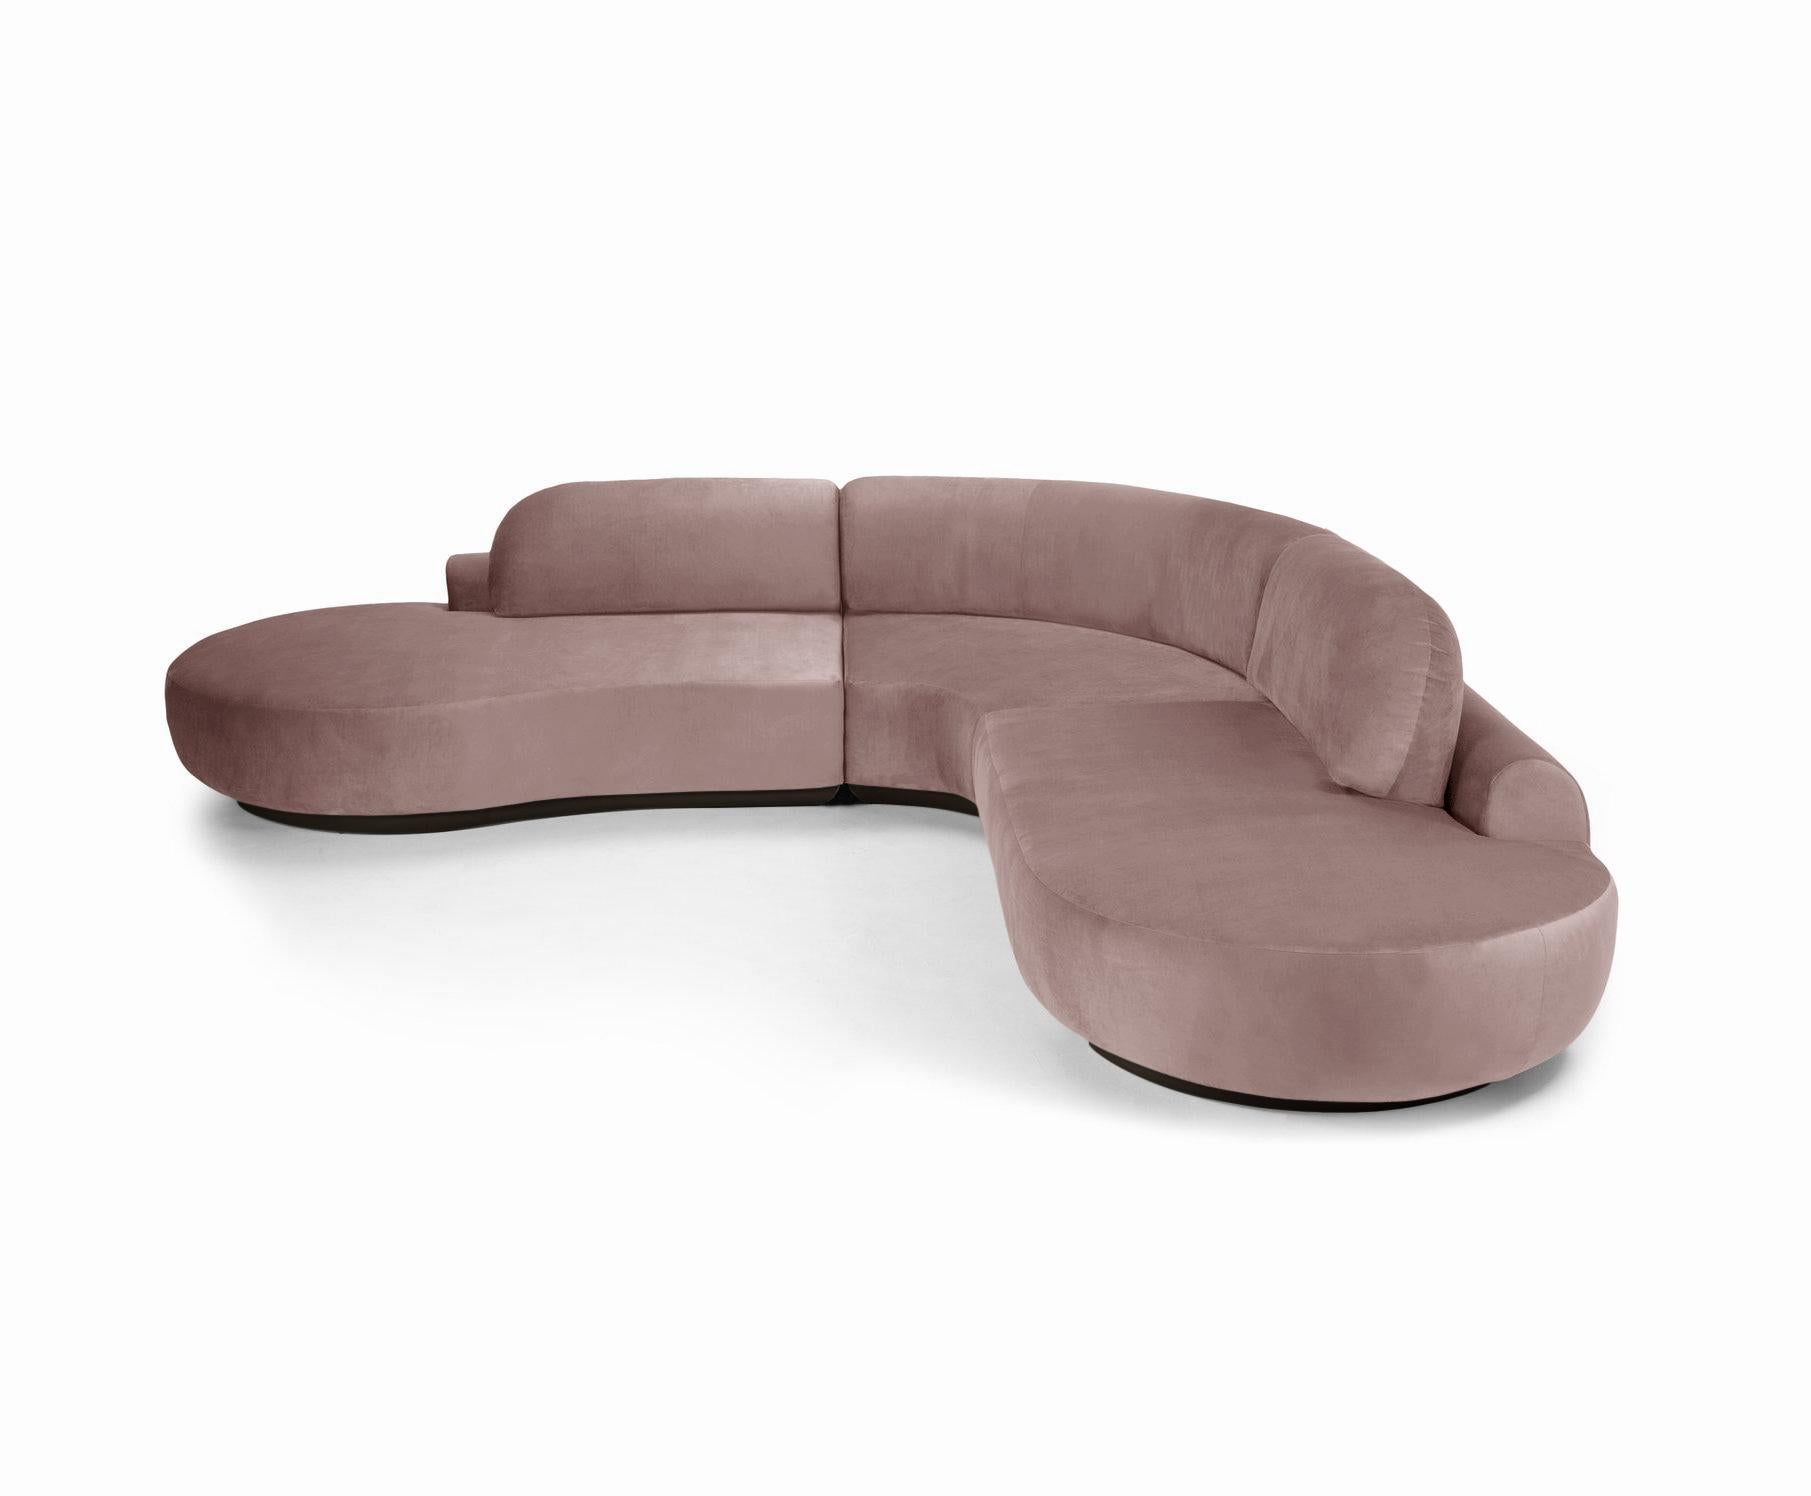 Le canapé sectionnel nu est un canapé modulaire aux courbes invitantes et à l'assise confortable. Fabriqué à la main avec une base en bois massif. Le canapé sectionnel nu est disponible dans un certain nombre de matériaux, de finitions et de